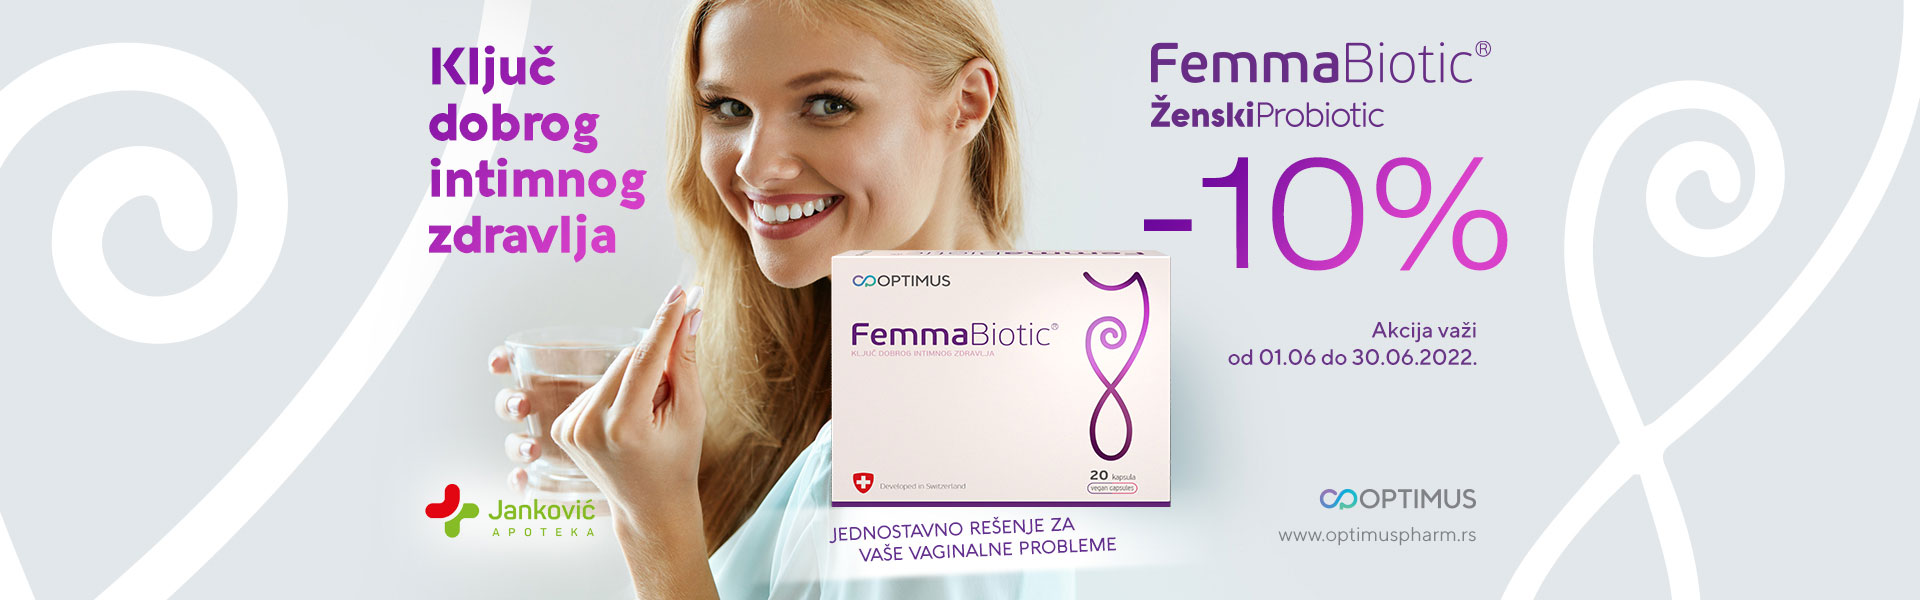 Femmabiotic